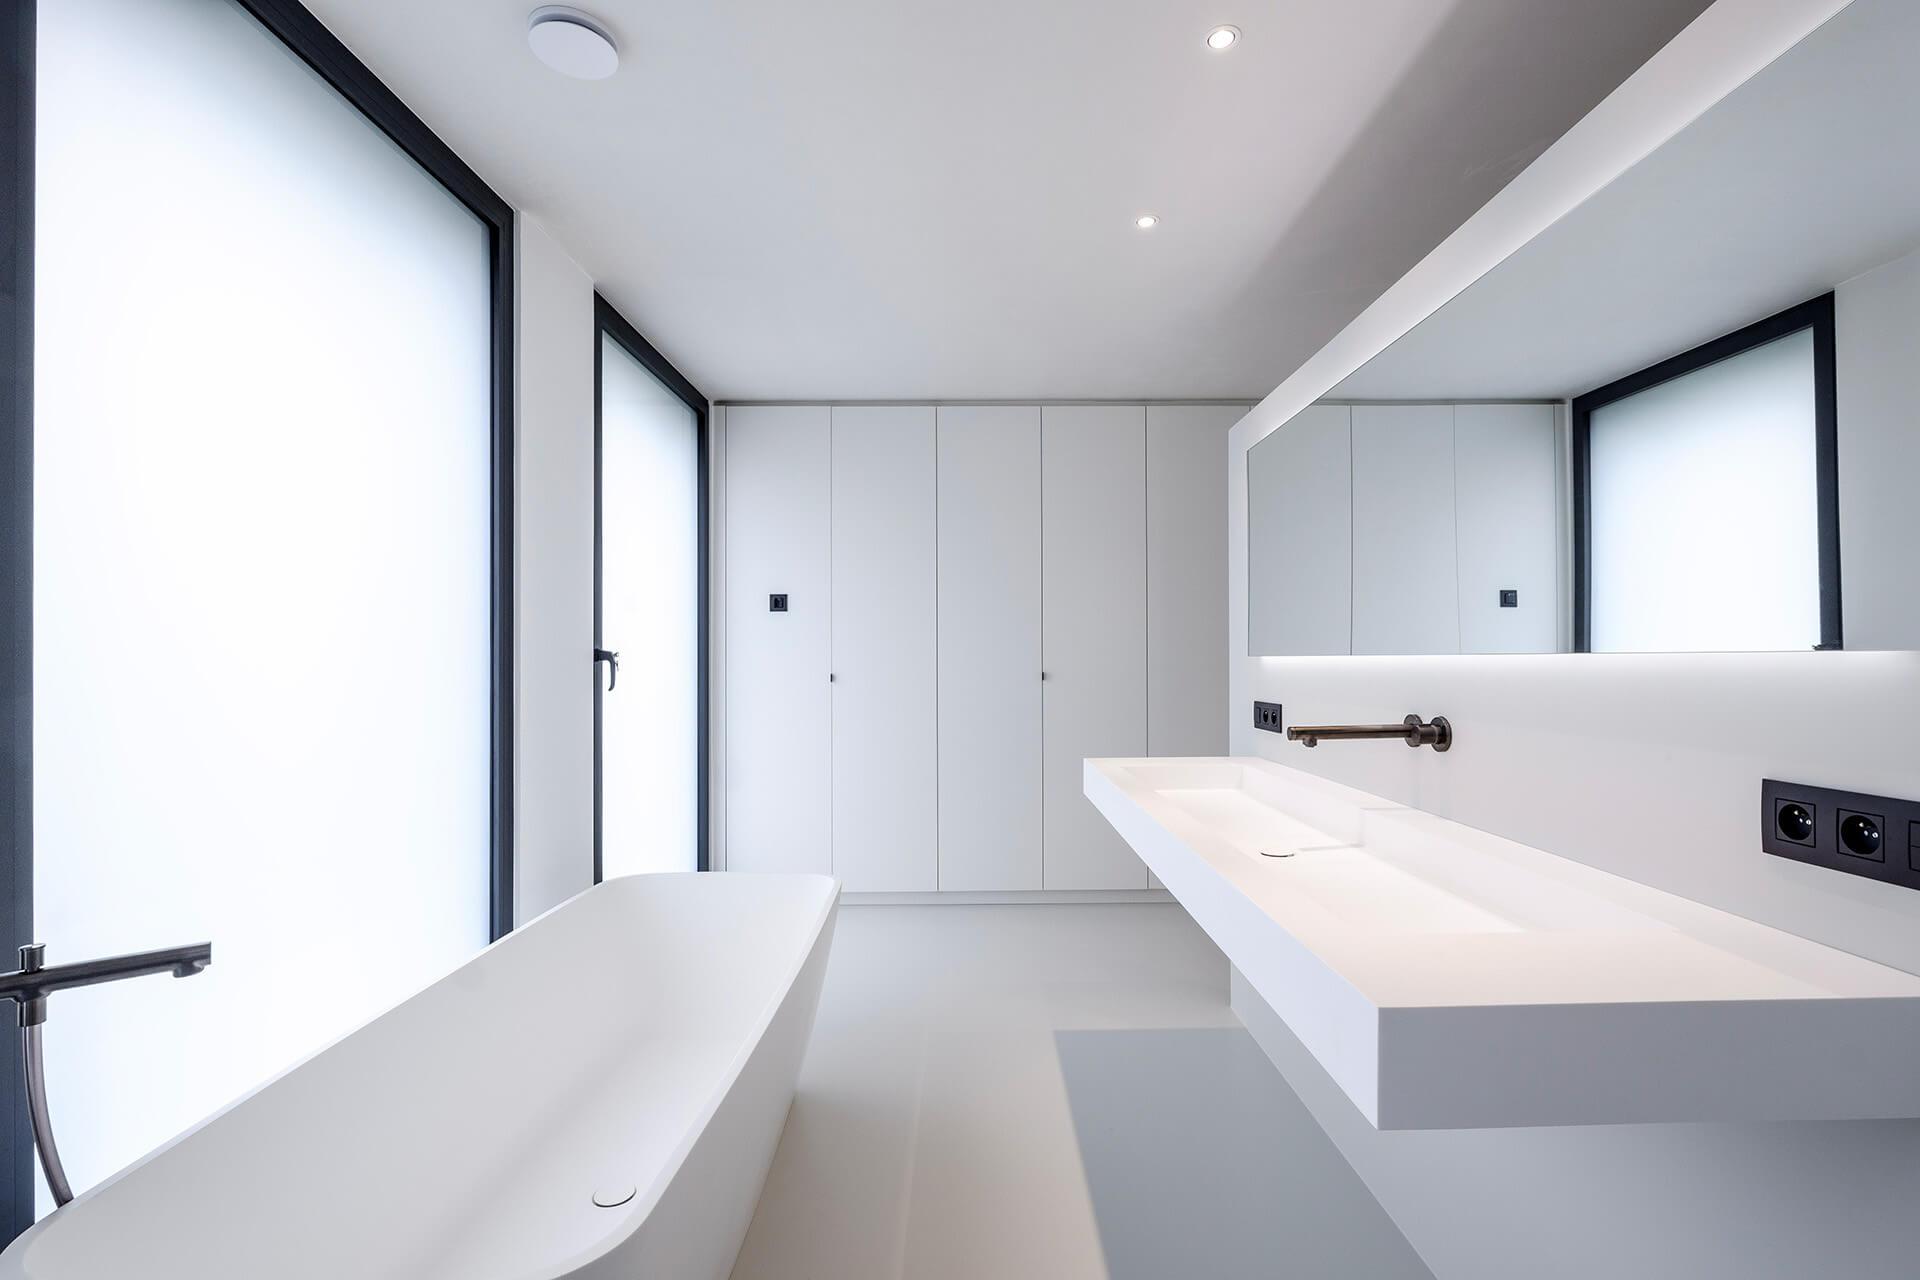 Witte opbergkasten op maat voor de badkamer, van maatkasten online